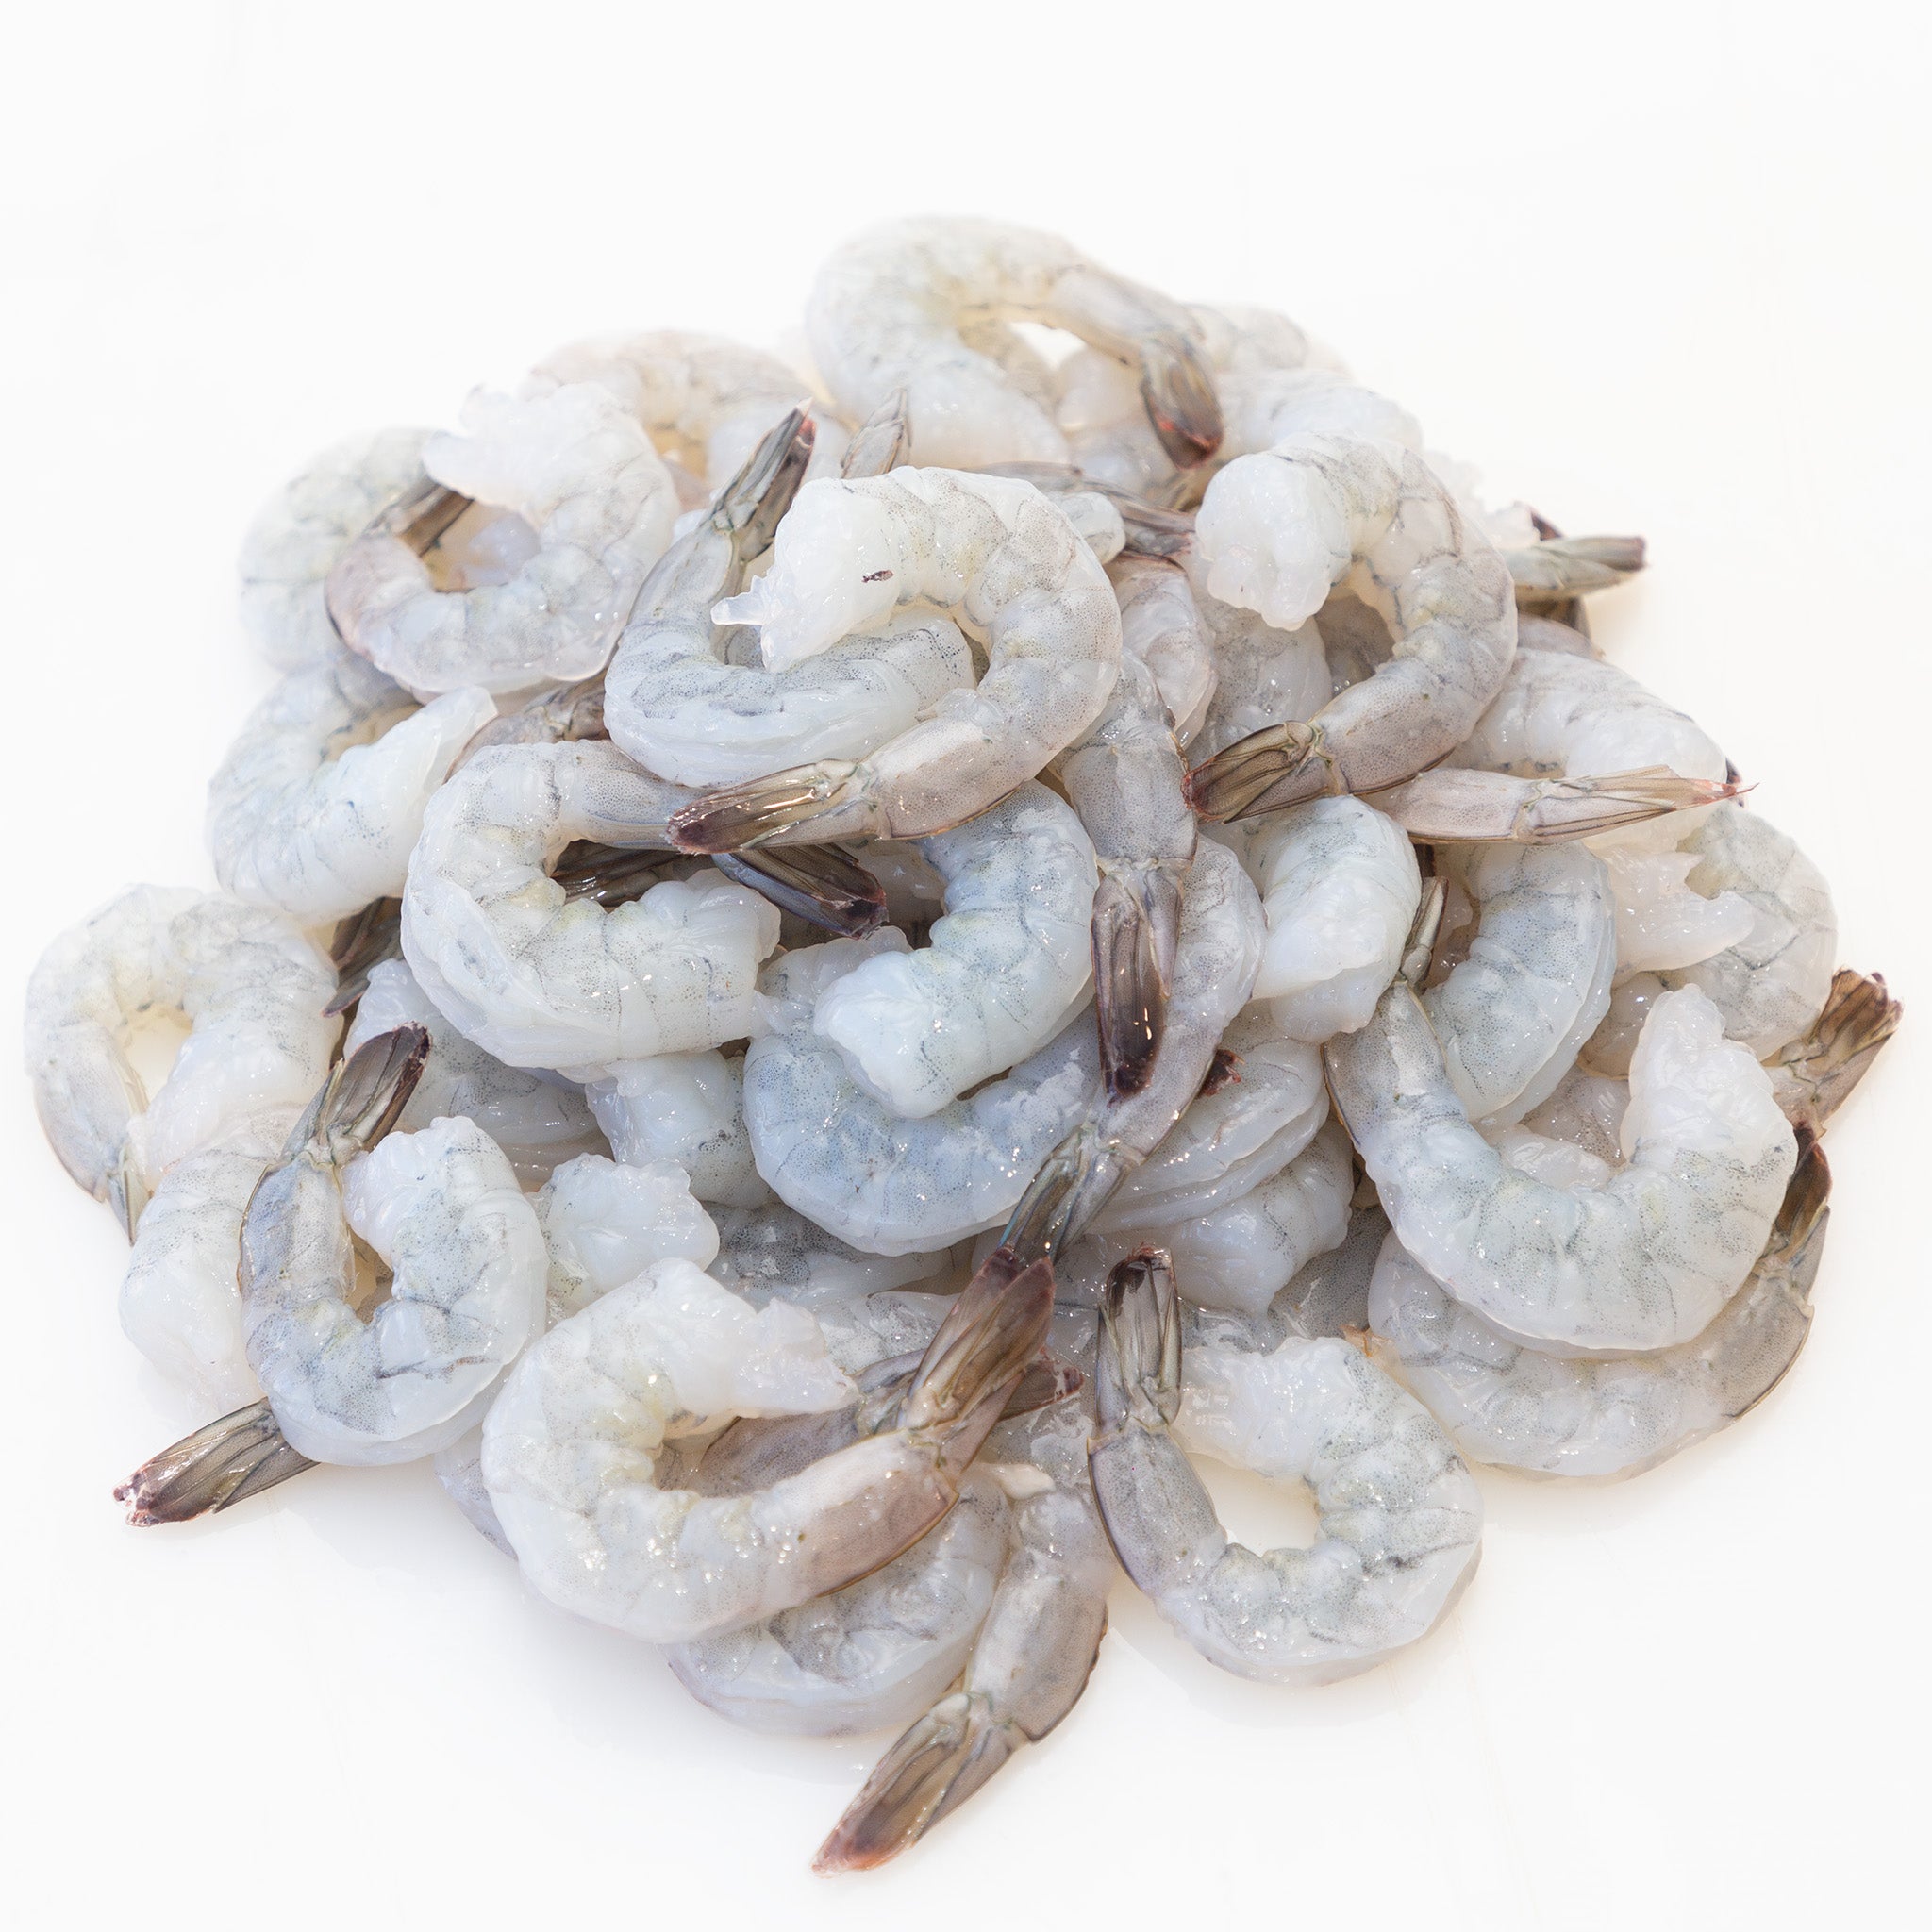 Raw Vannamei Prawns 1kg Frozen - Steve Costi's Seafood